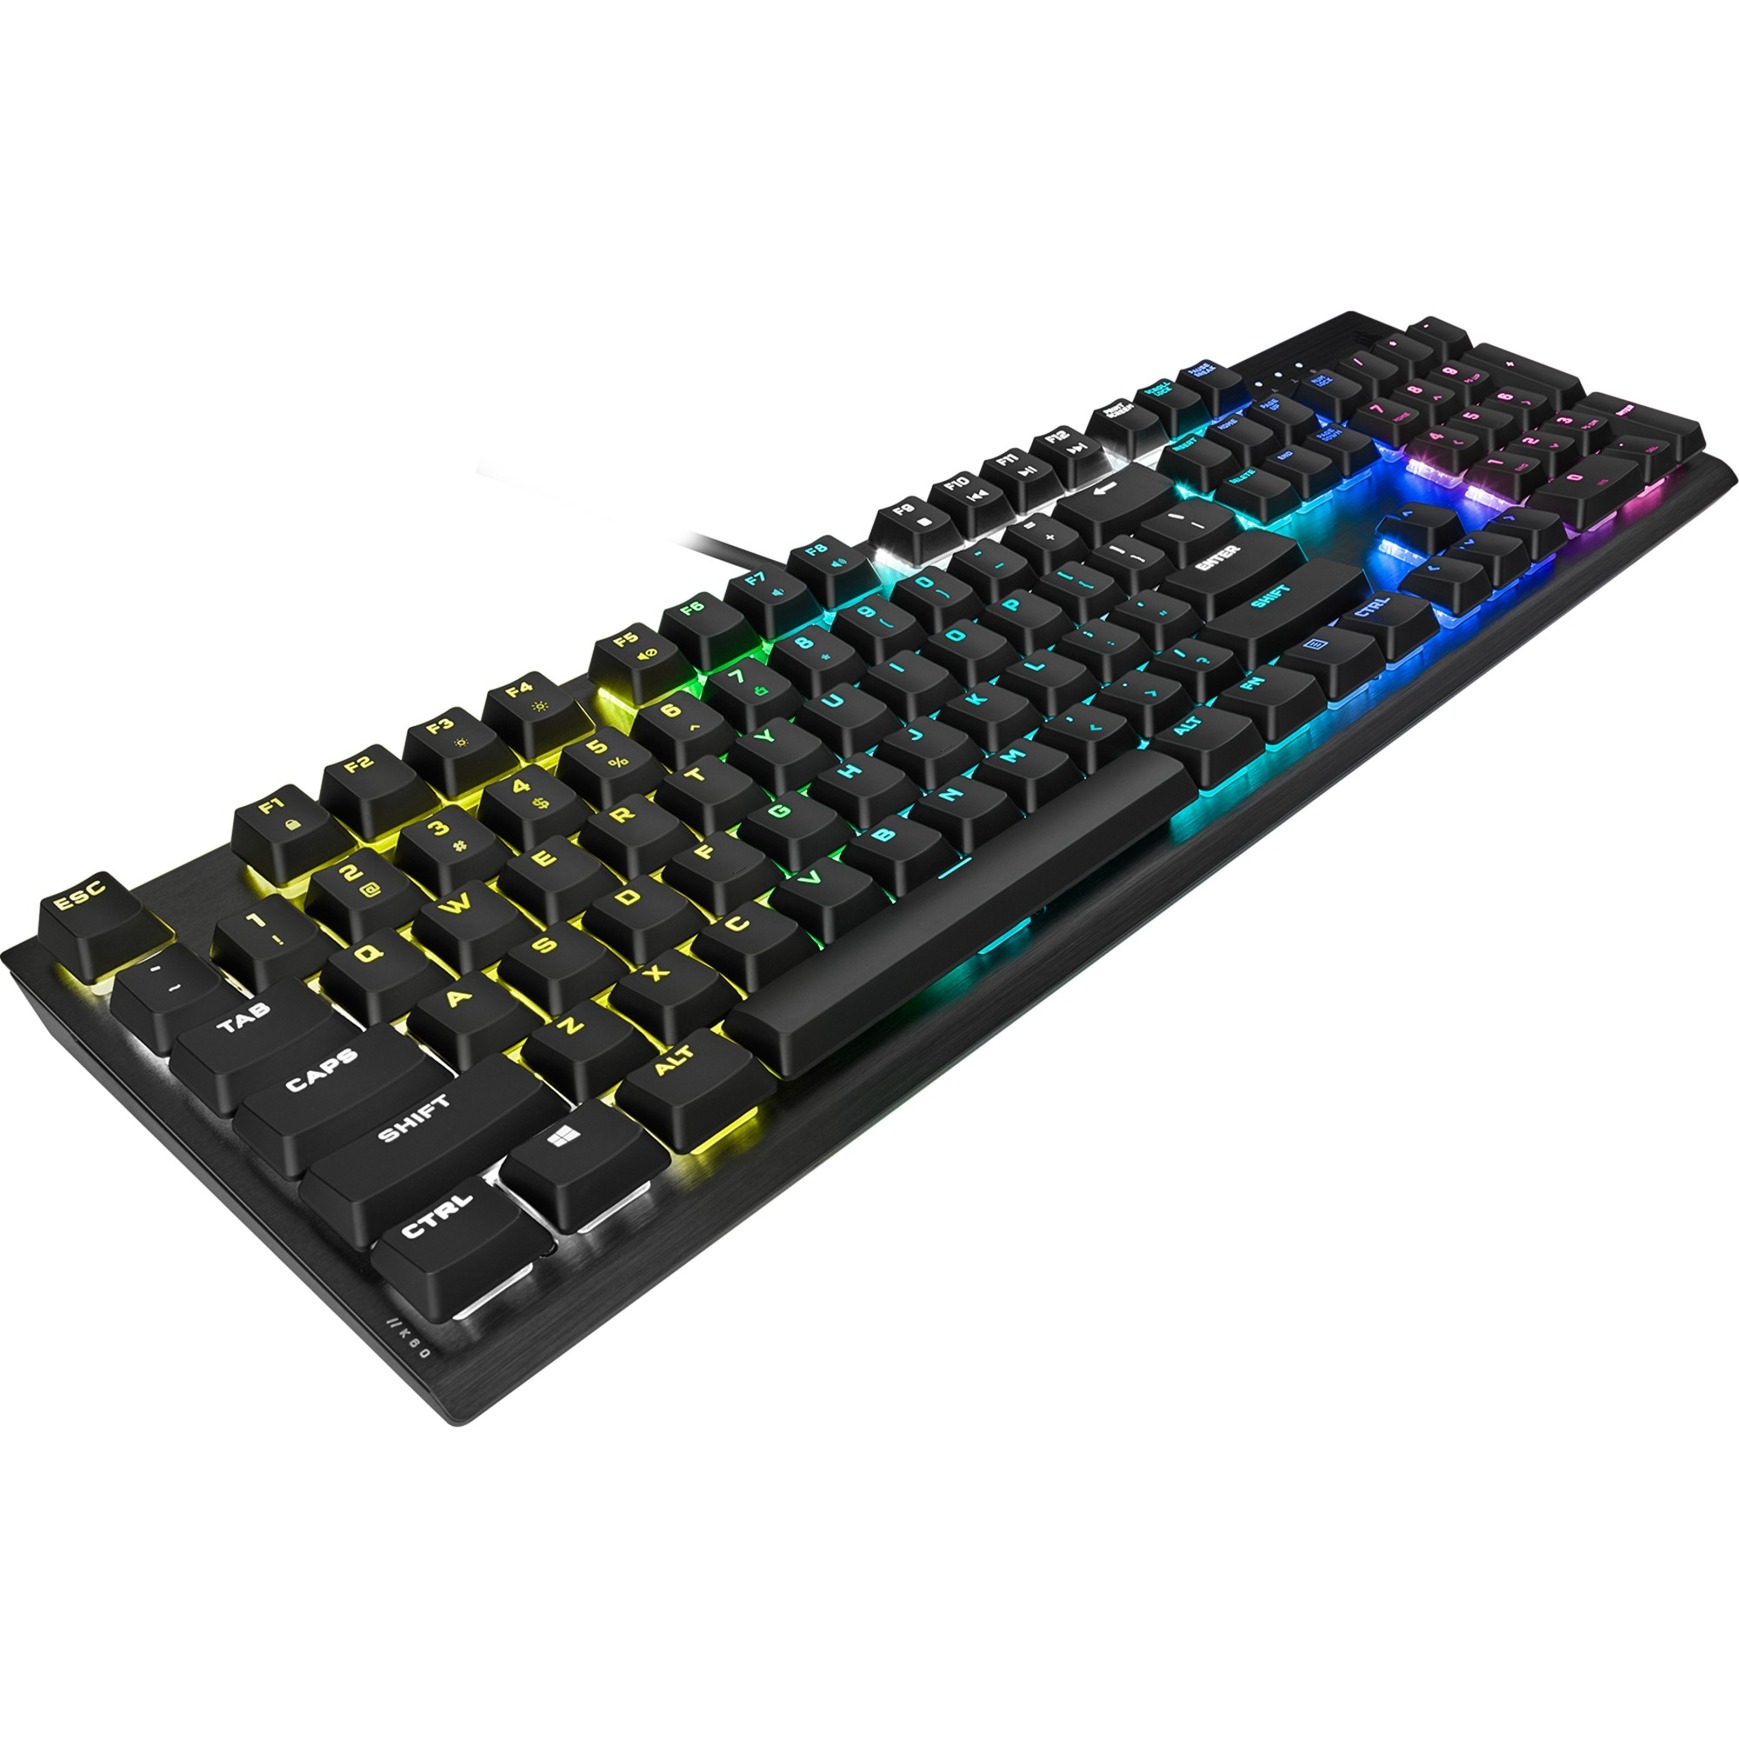 Image of Alternate - K60 RGB Pro Low Profile, Gaming-Tastatur online einkaufen bei Alternate